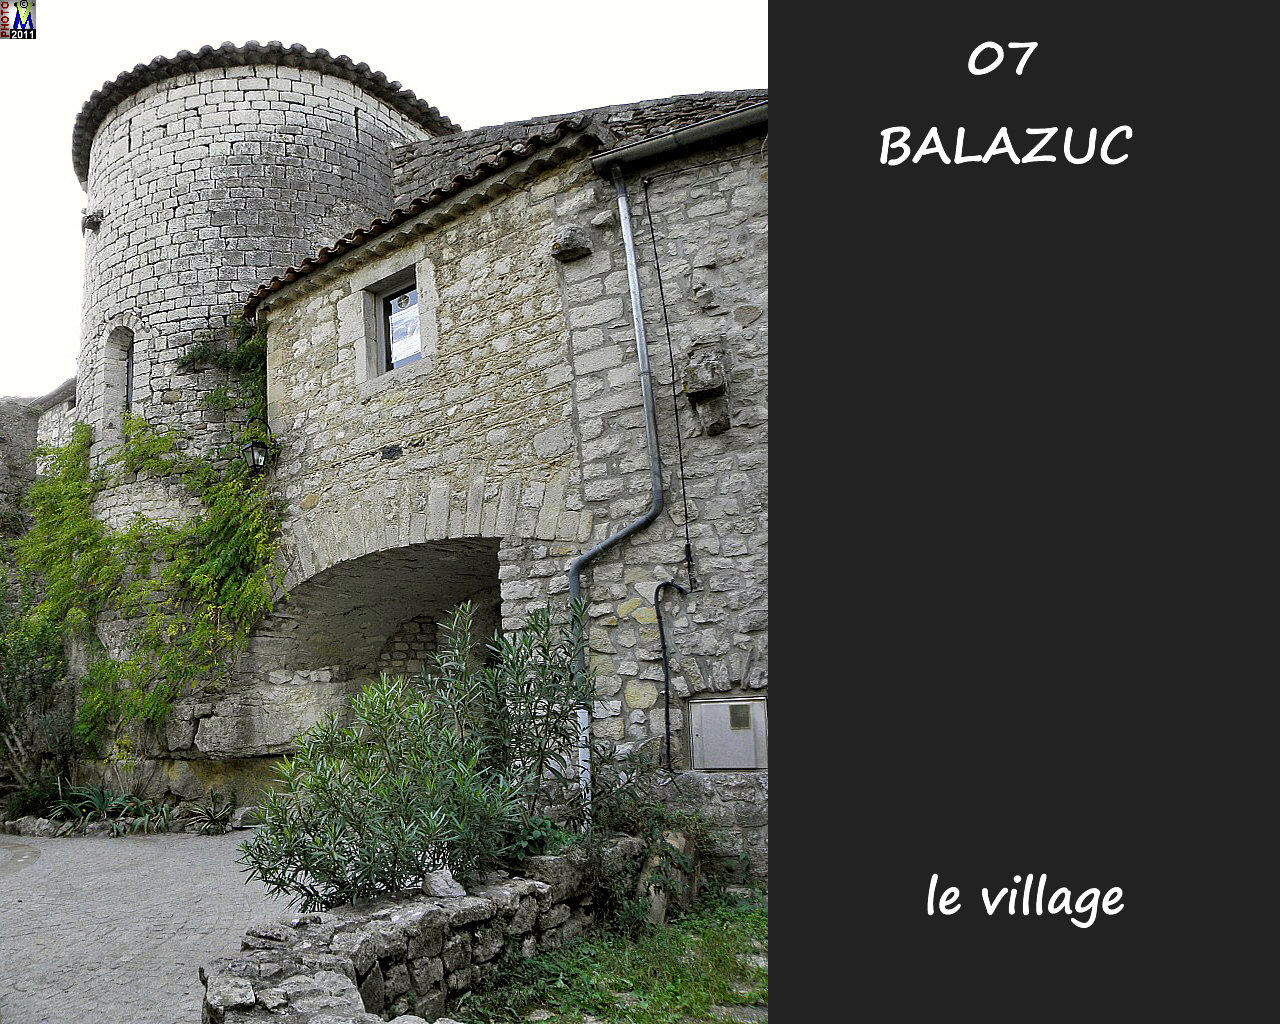 07BALAZUC_village_138.jpg